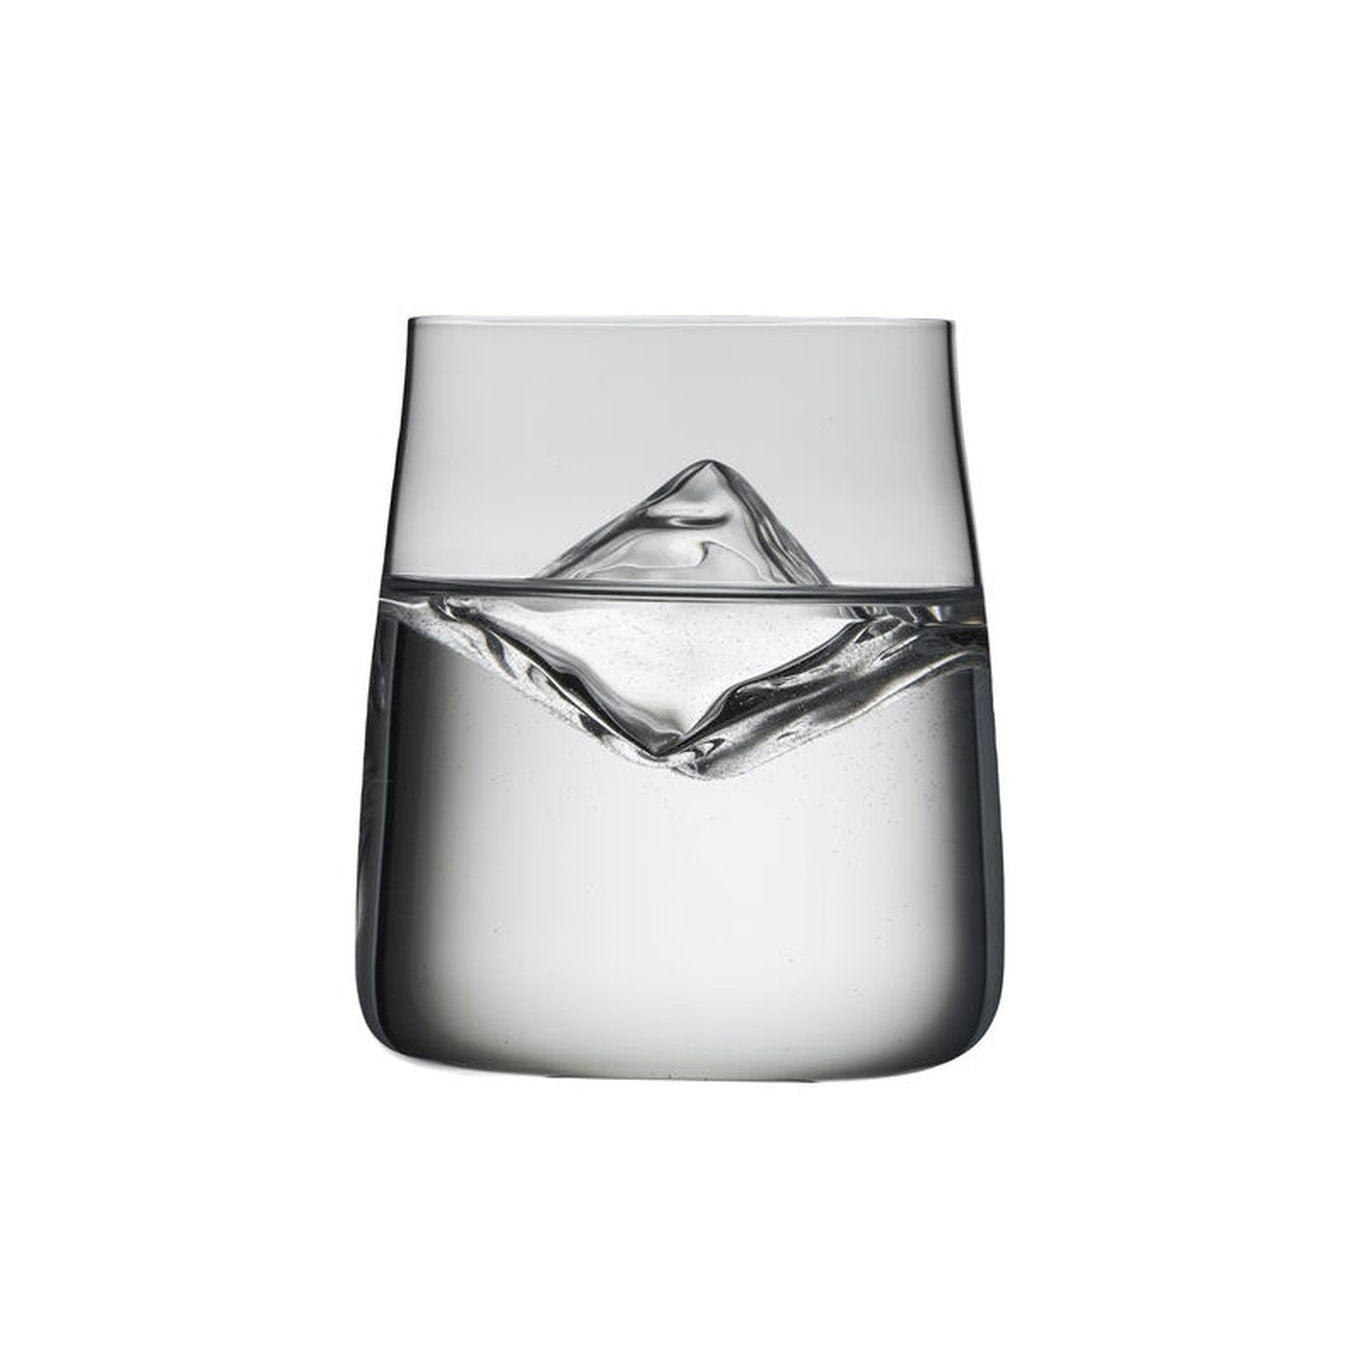 Lyngby Glas Noll Krystal Water Glass 42 Cl, 6 st.